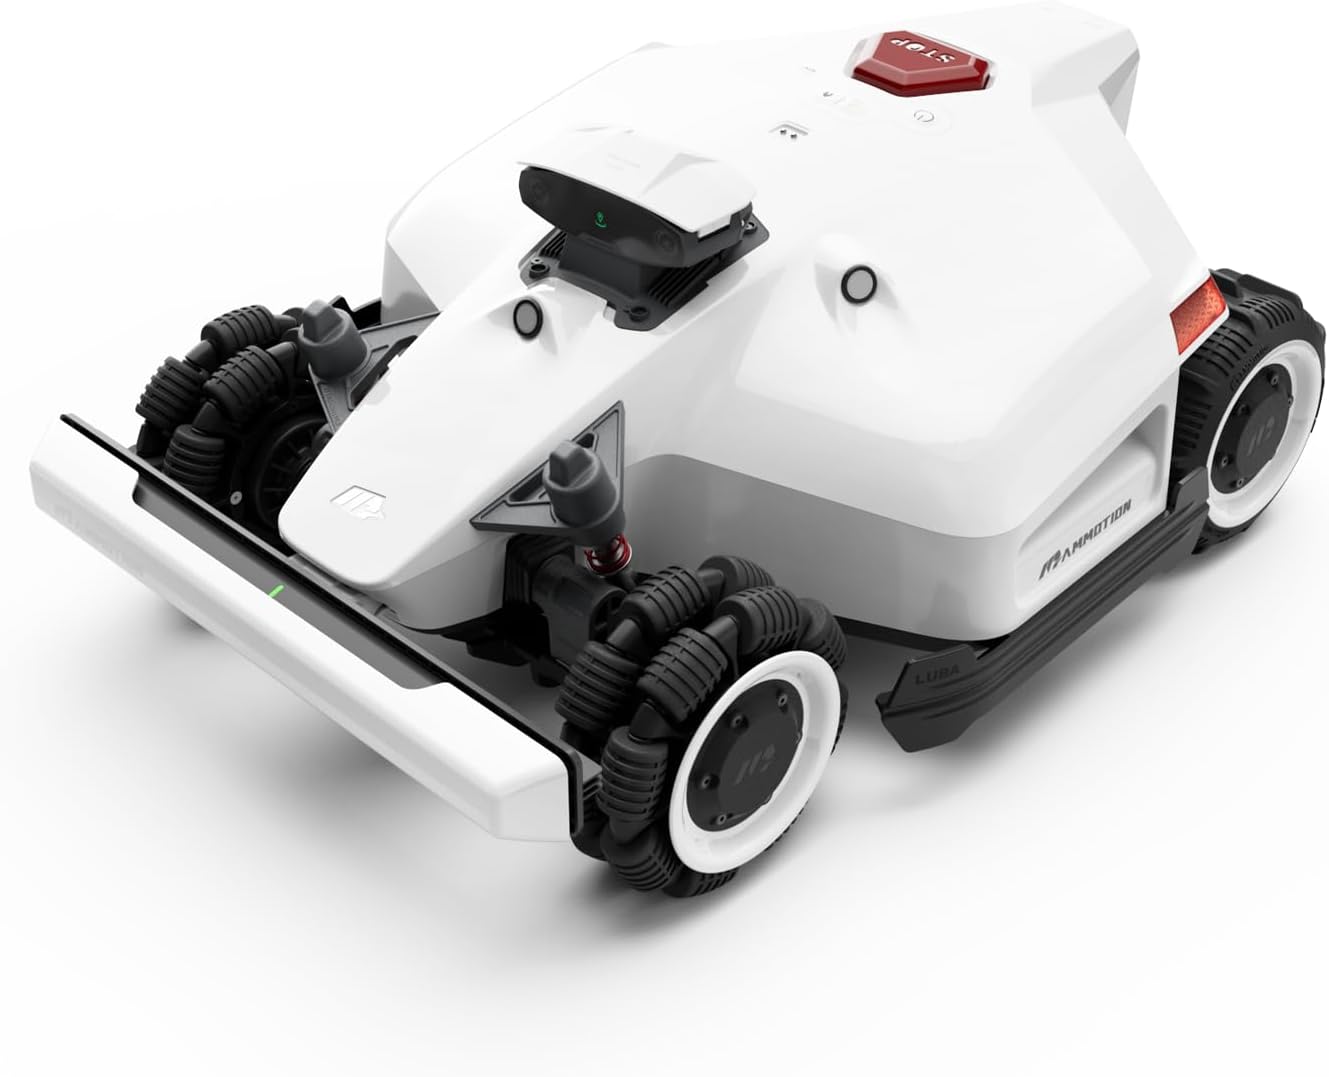 LUBA 2 AWD 5000H Robot Lawn Mower